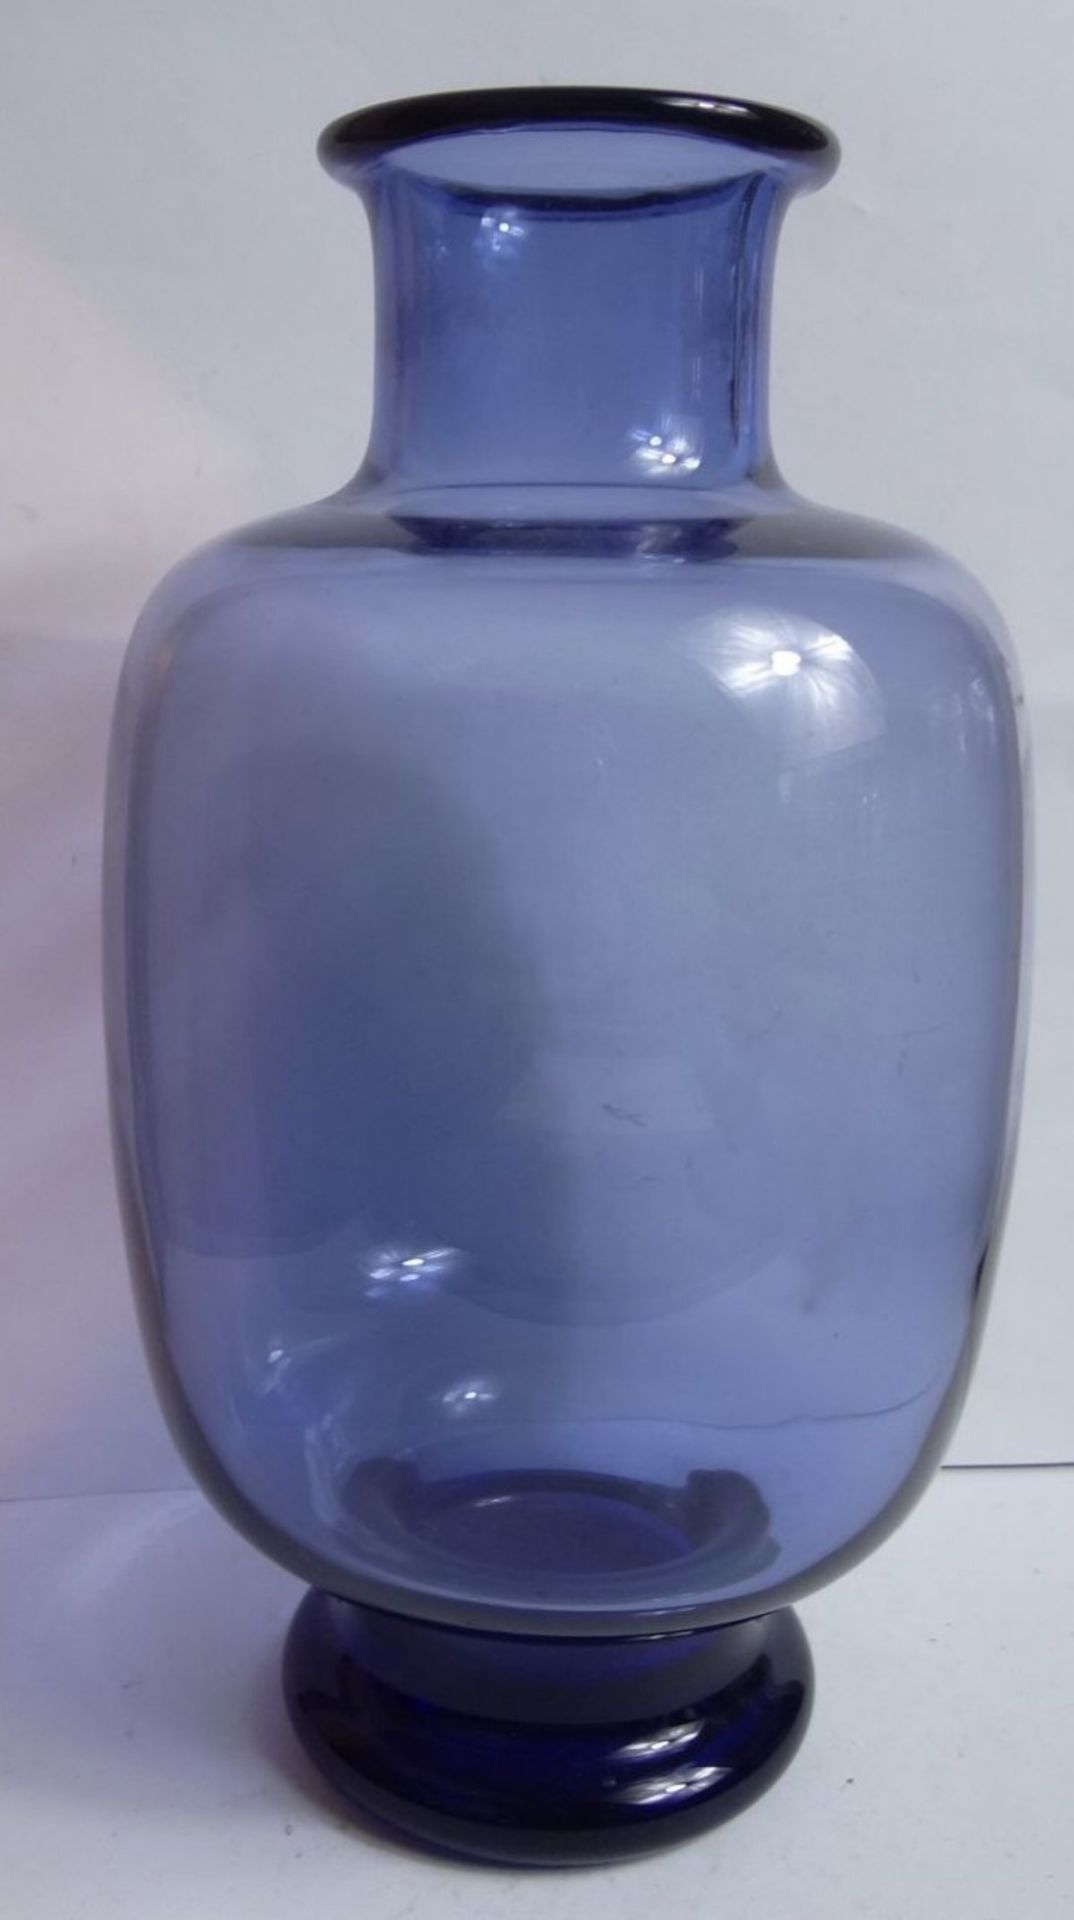 hellblaue Holmegaard Vase auf dkl.blauen Stand, signiert, H-21 cm - Bild 2 aus 8